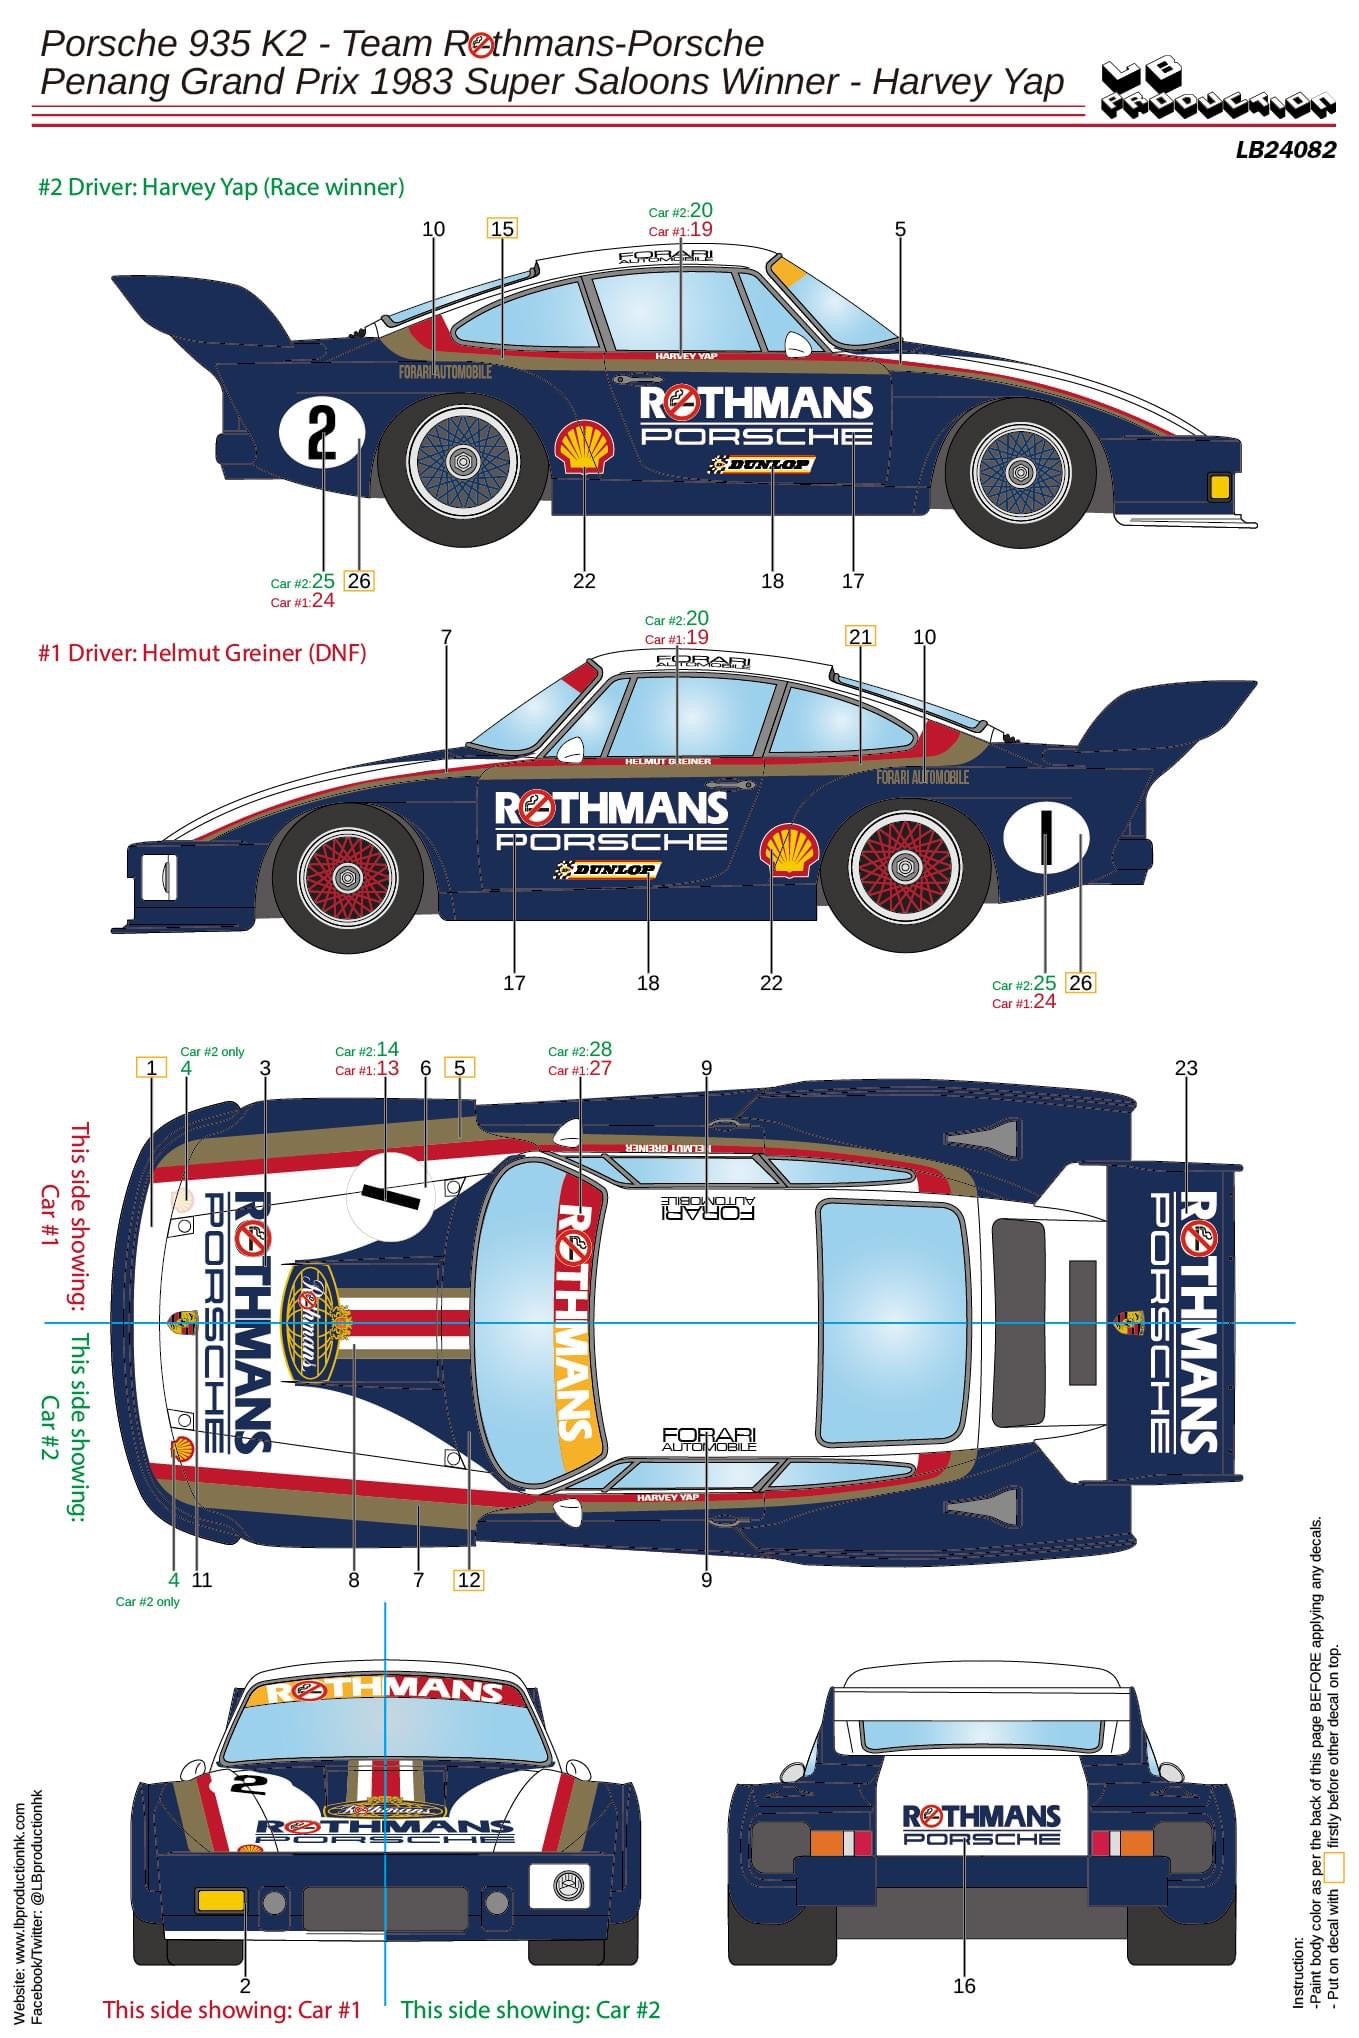 SET DECAL / REAR WING PORSCHE 935 K2 - ROTHMANS - PENANG GP 1983 SUPER SALOON WINNER